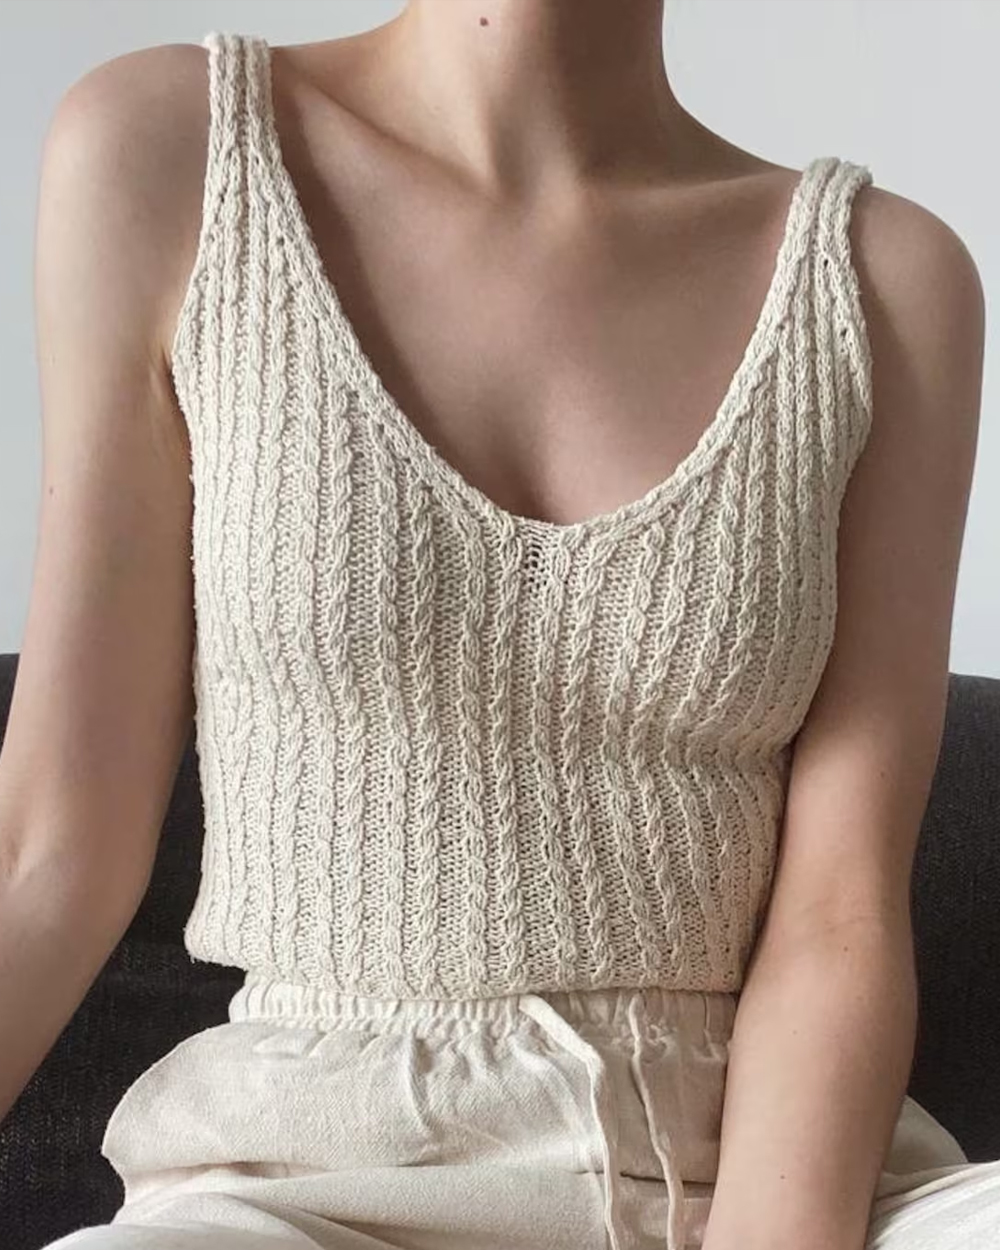 Ilana Camisole Knitting Pattern 